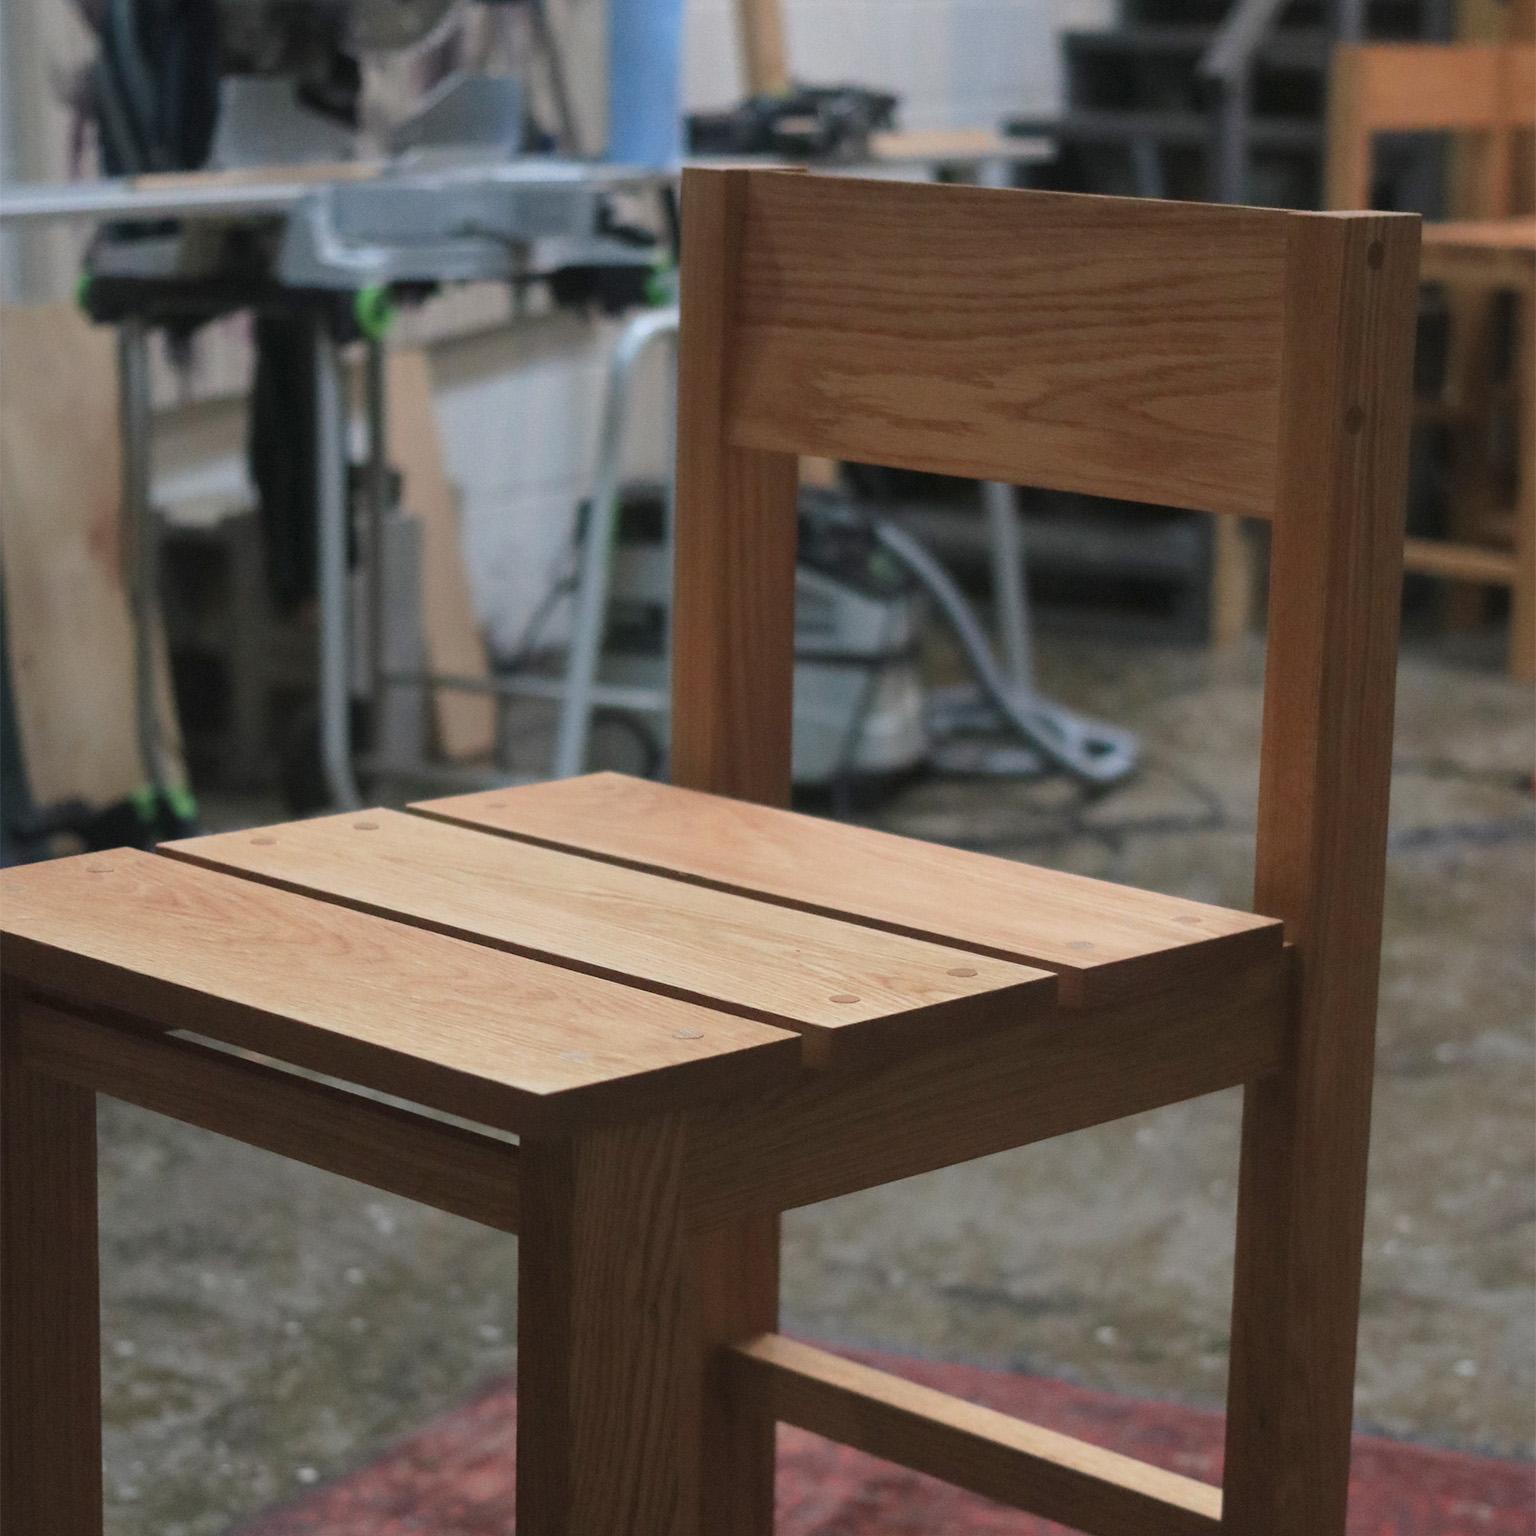 Le tabouret Andhrímnir en chêne massif est un étonnant meuble minimaliste qui dégage un charme architectural. Fabriqué à la main avec précision et soin, chaque tabouret est fabriqué en bois de chêne massif qui promet une durabilité et une longévité